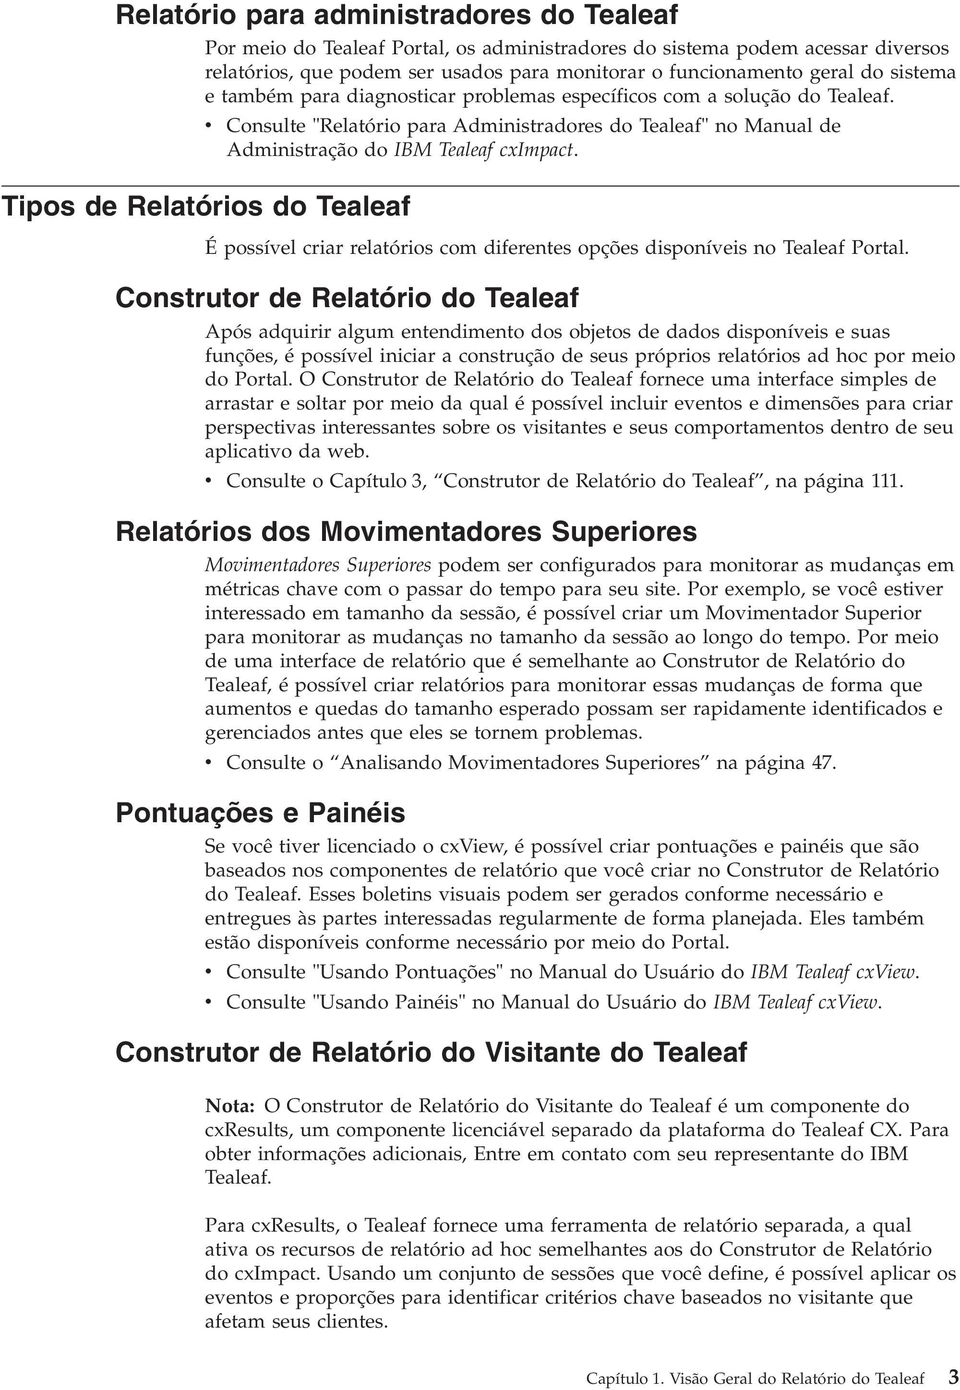 Tipos de Relatórios do Tealeaf Consulte "Relatório para Administradores do Tealeaf" no Manual de Administração do IBM Tealeaf cximpact.